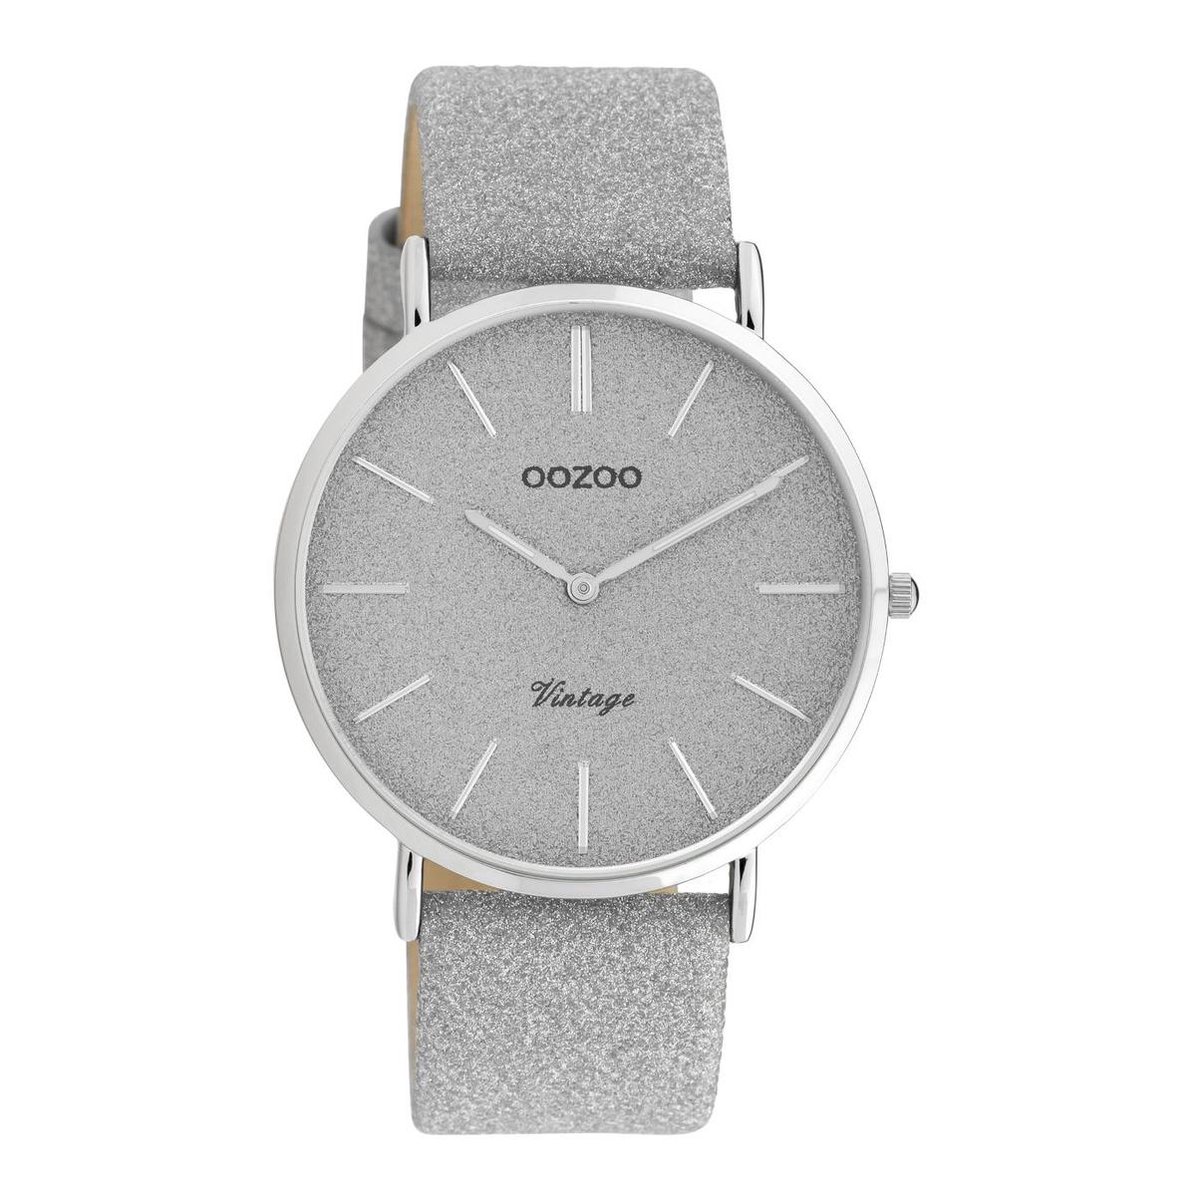 OOZOO Vintage series - zilverkleurige horloge met zilverkleurige leren band - C20160 - Ø40